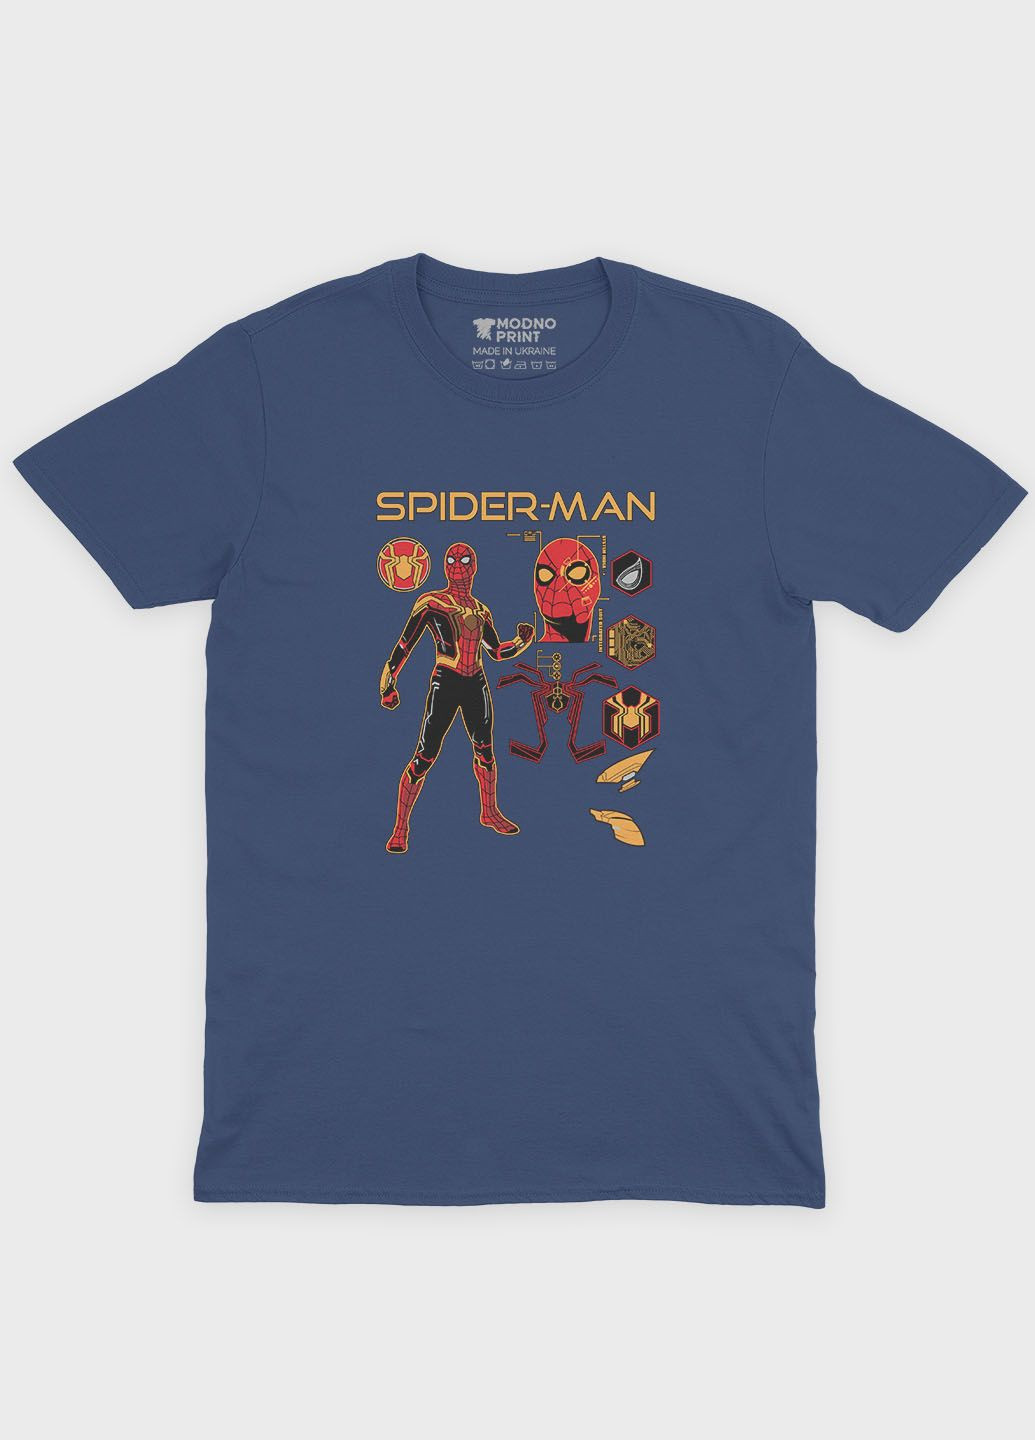 Темно-синя демісезонна футболка для хлопчика з принтом супергероя - людина-павук (ts001-1-nav-006-014-095-b) Modno